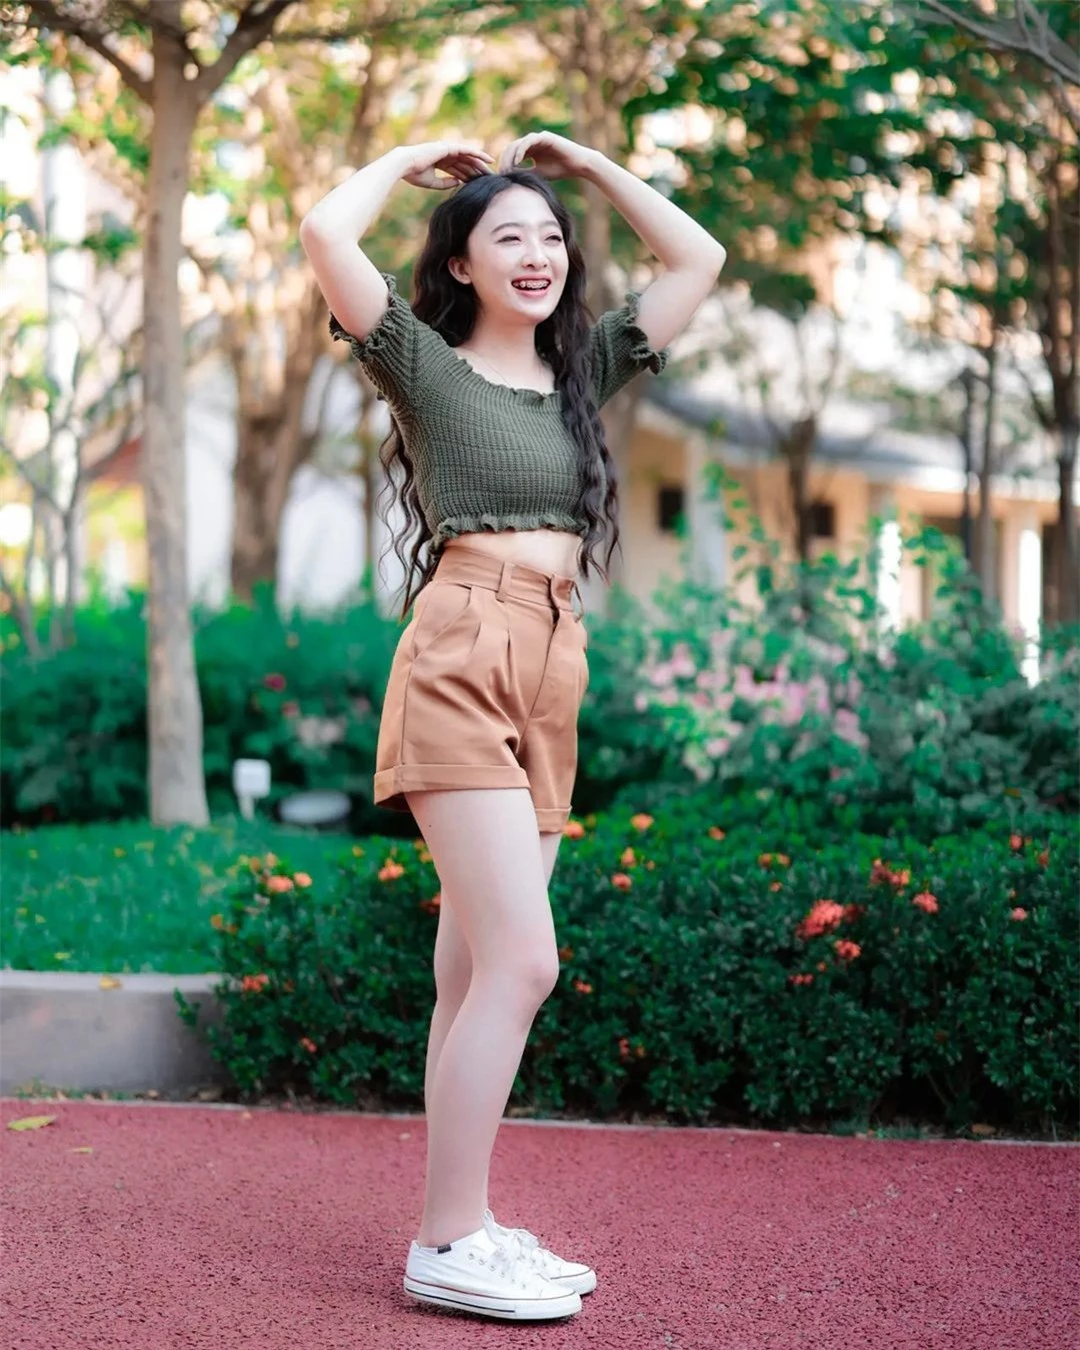 Nhan sắc đời thường người đẹp Lào sang Việt Nam thi hoa hậu ảnh 13